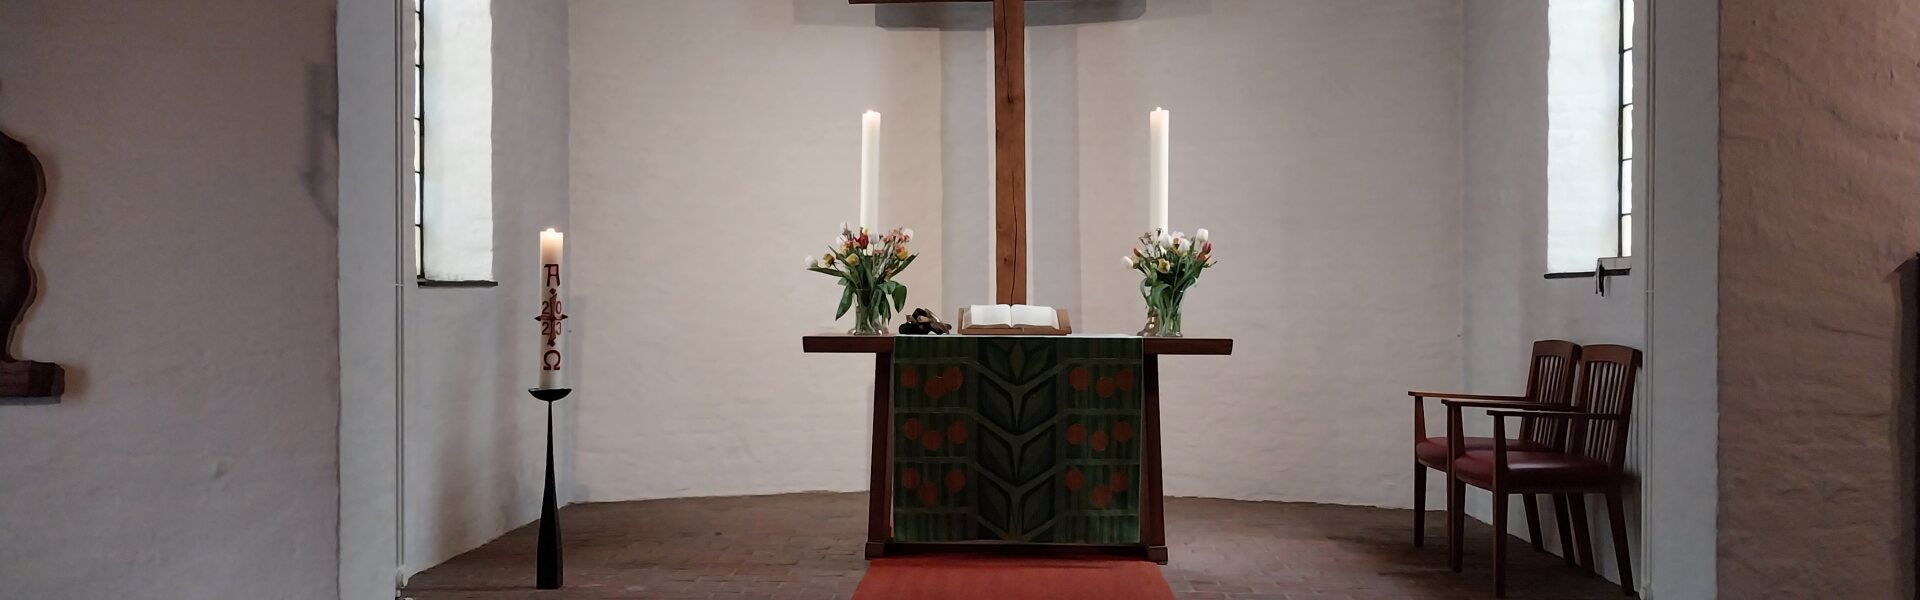 Altar und Lesepult in der Heilig-Geist-Kirche